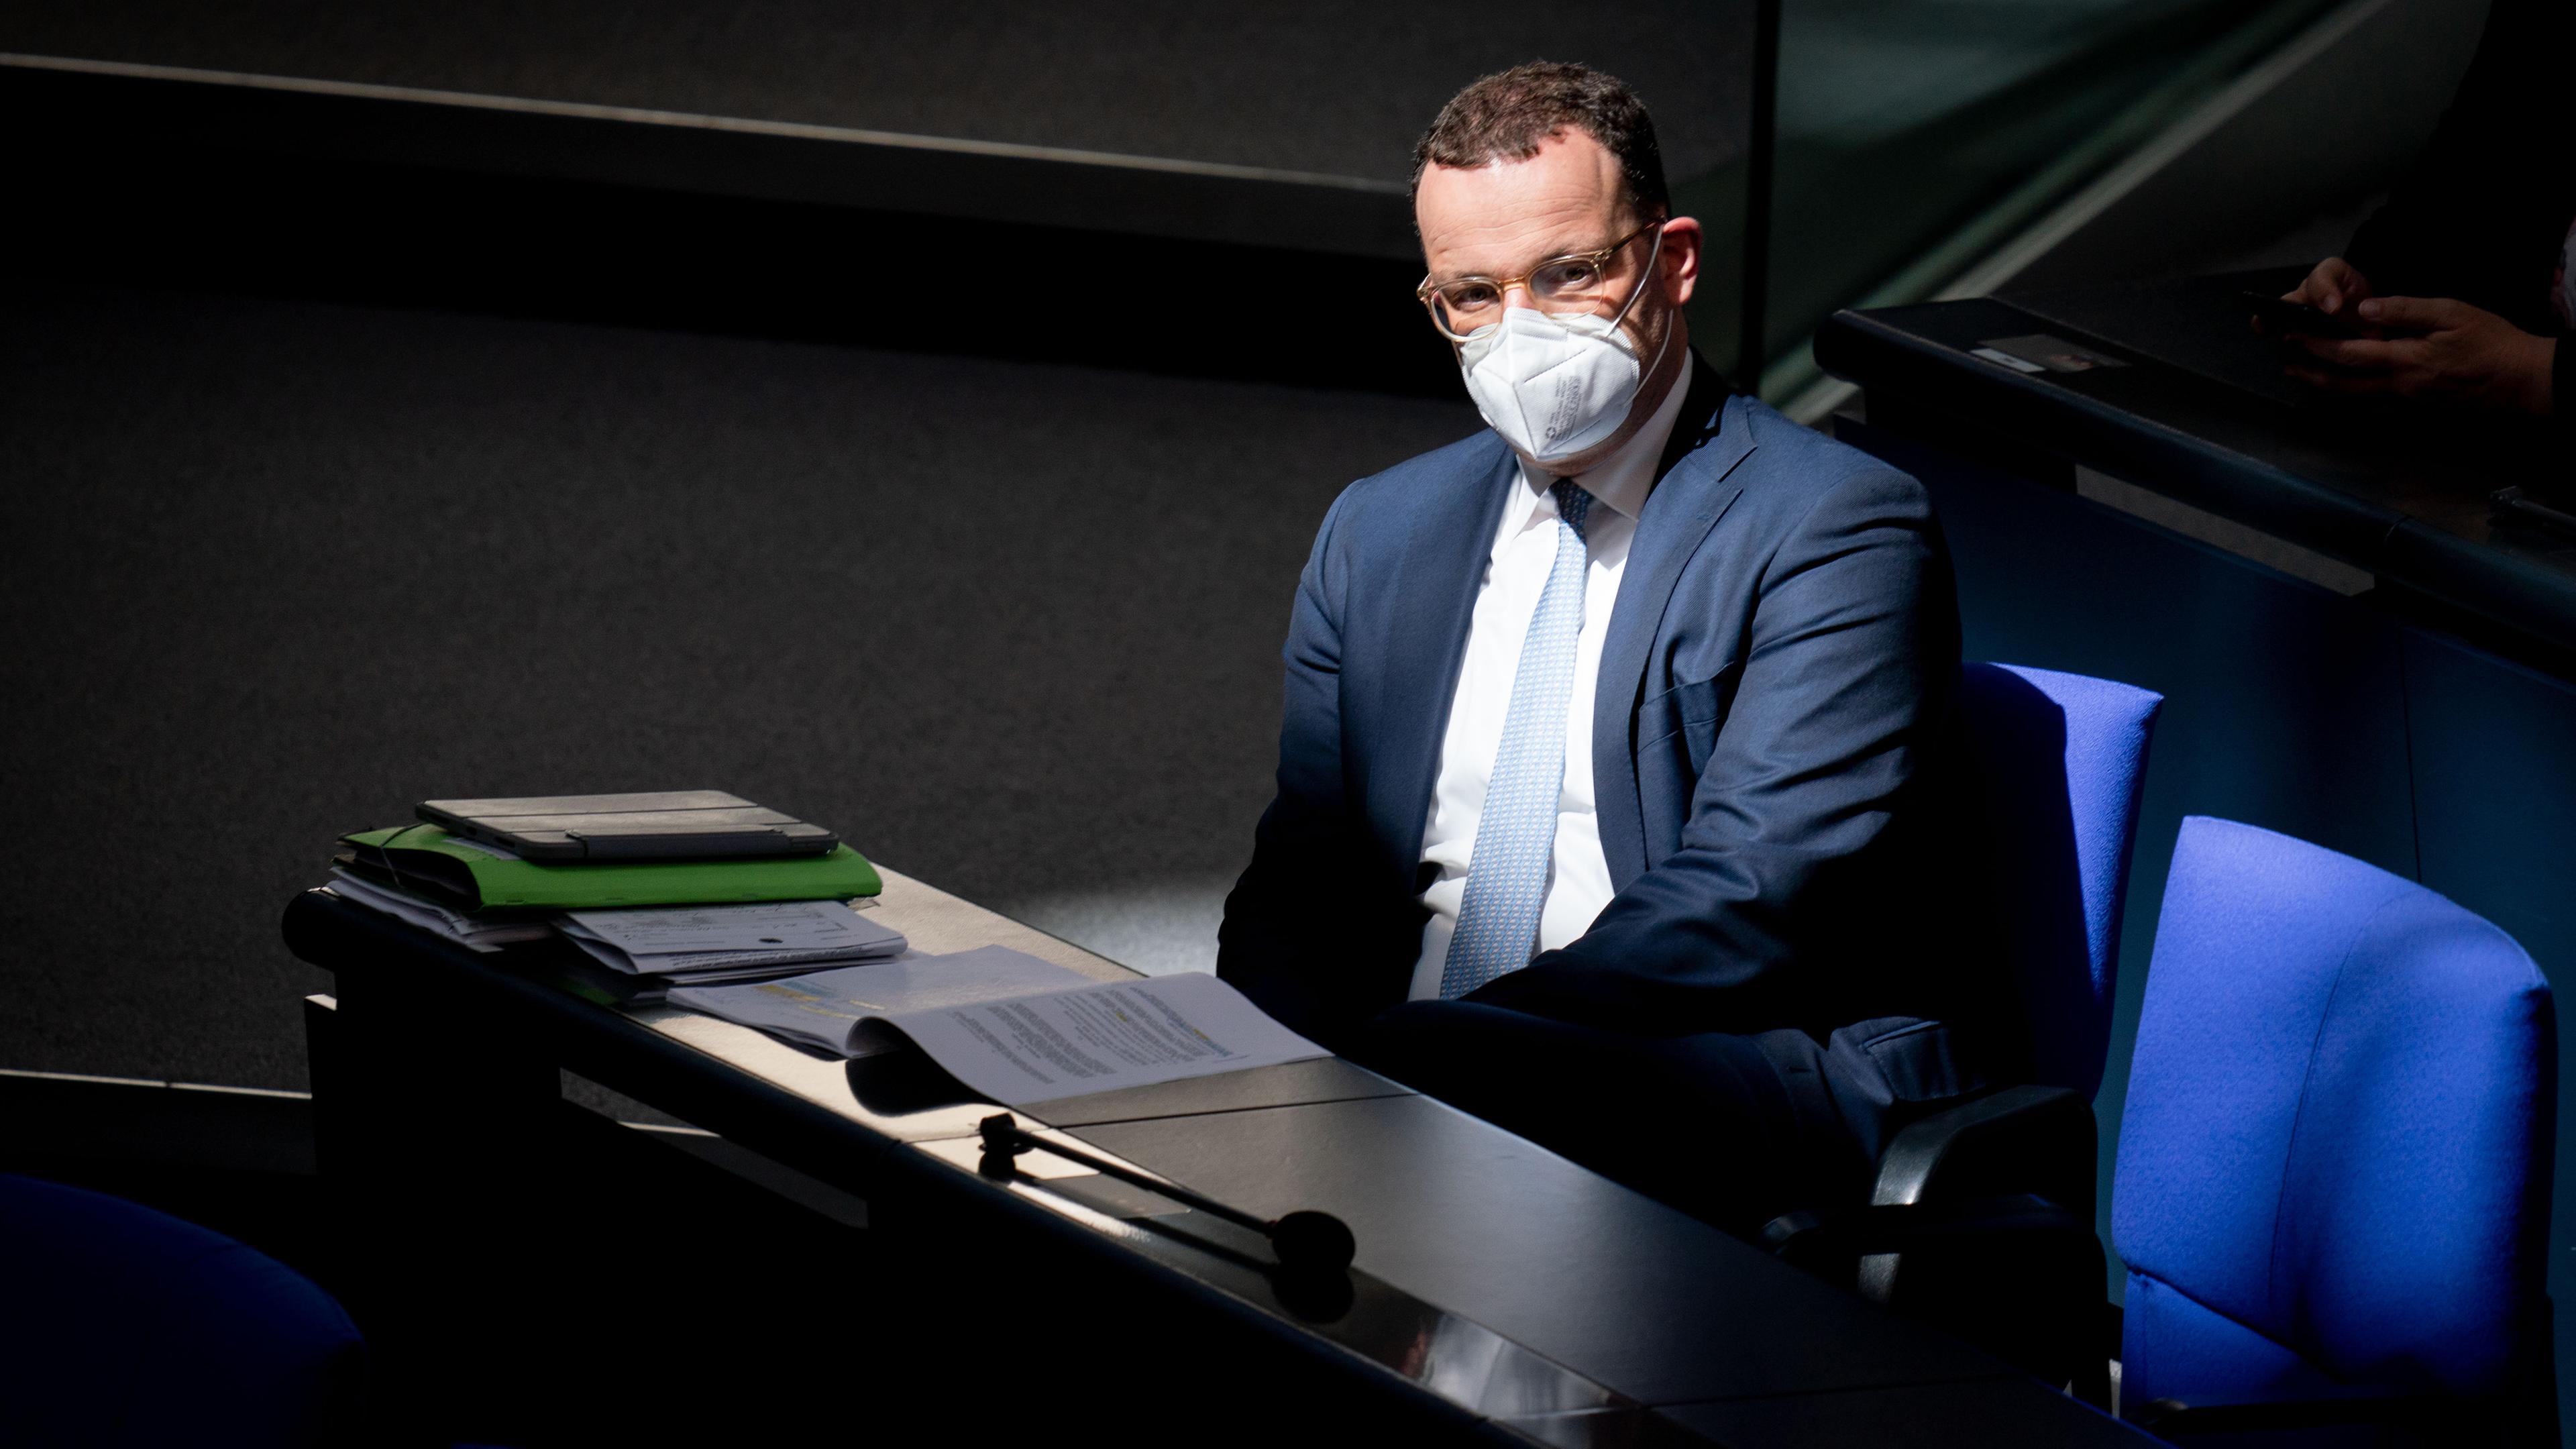 Archiv: Jens Spahn (CDU) sitzt mit eine Maske in einer Bundestagsitzung 